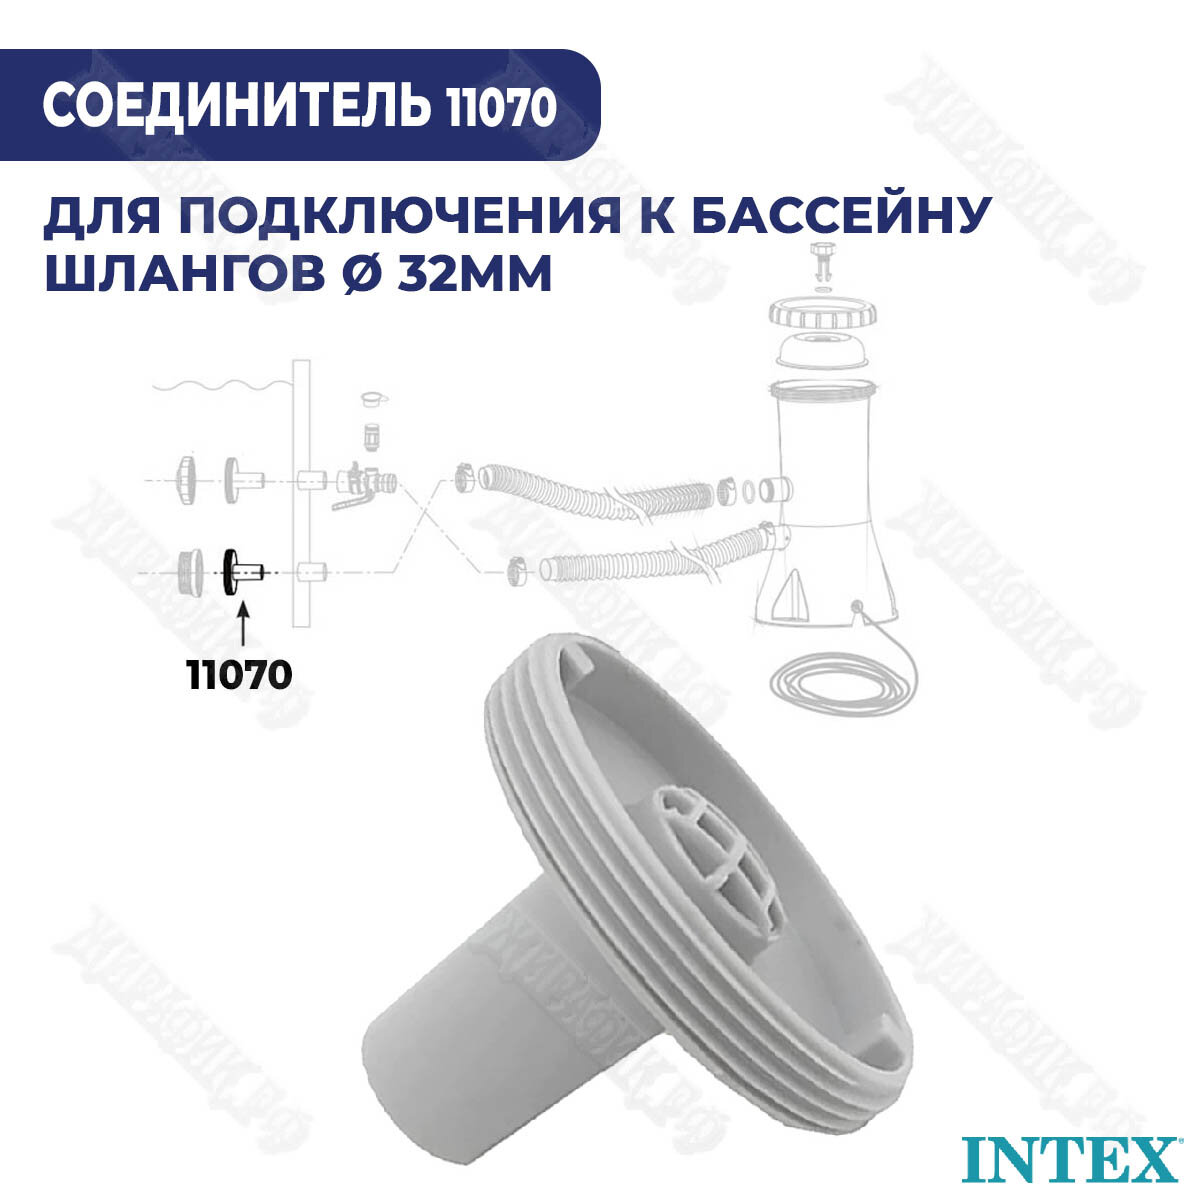 Соединитель для шланга Intex 32 мм 11070